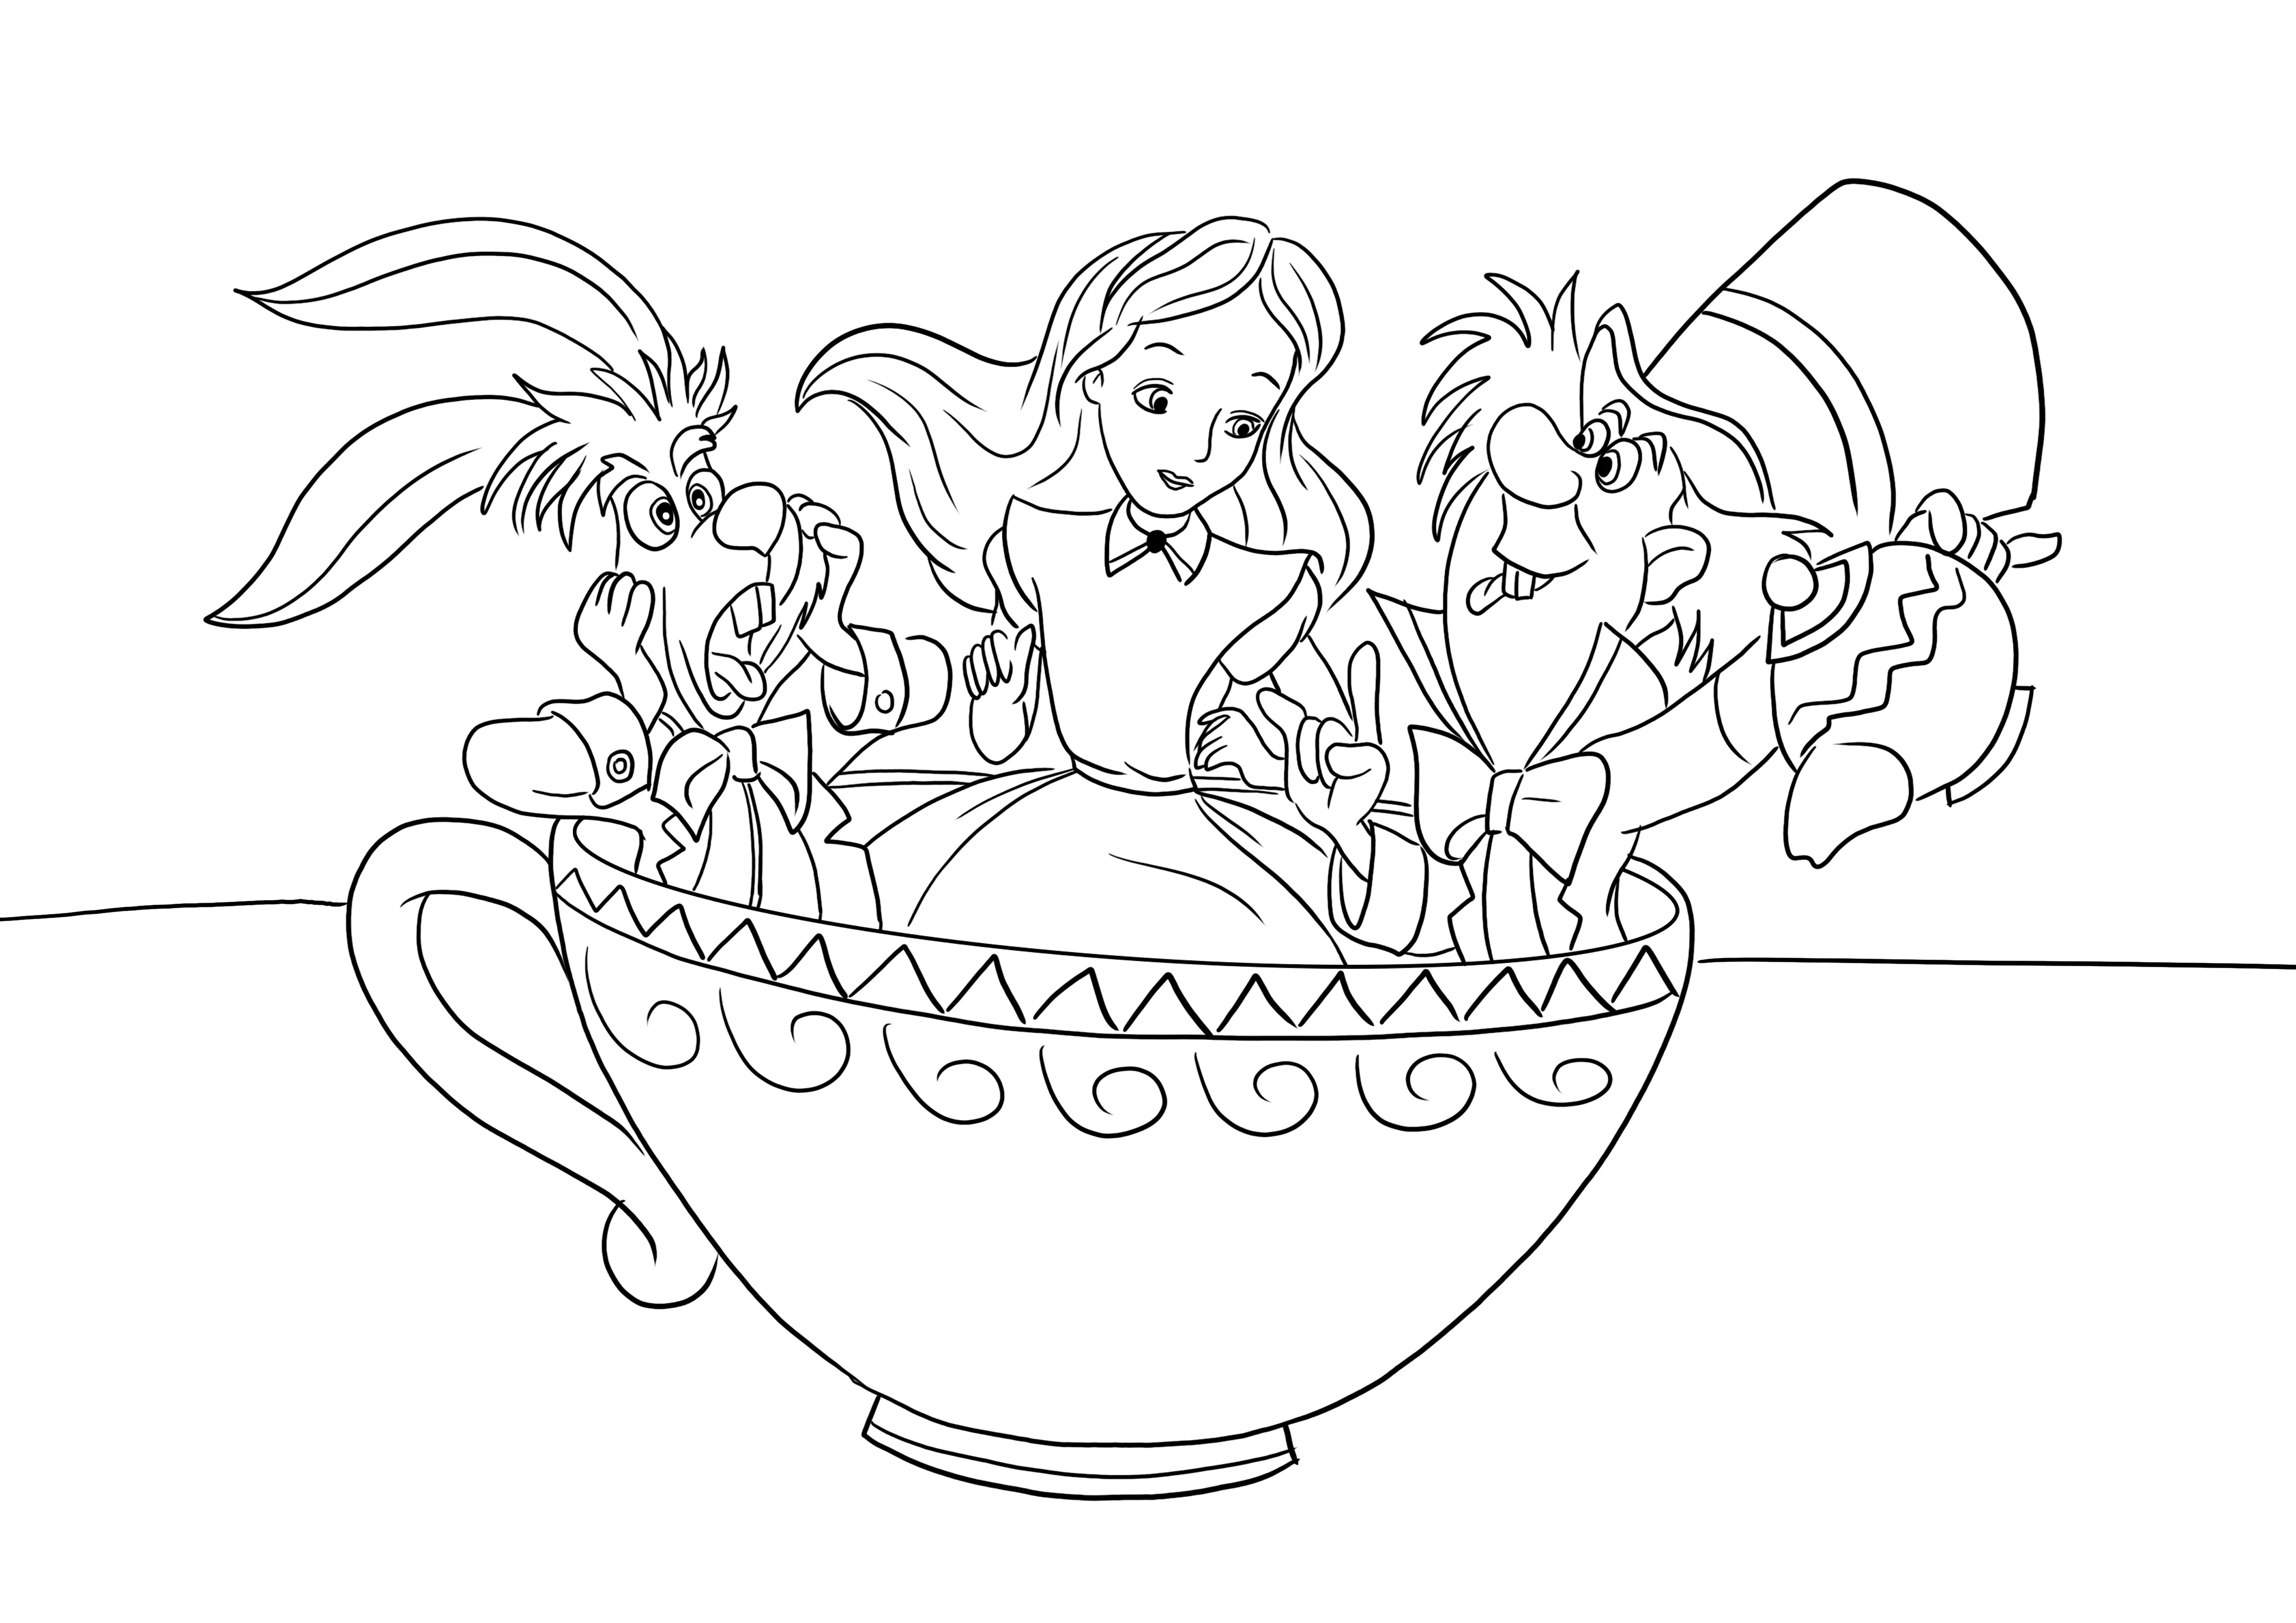 Mad Hatter-Alice-Rabbit in a tea cup kleurafbeelding gratis te downloaden of af te drukken kleurplaat